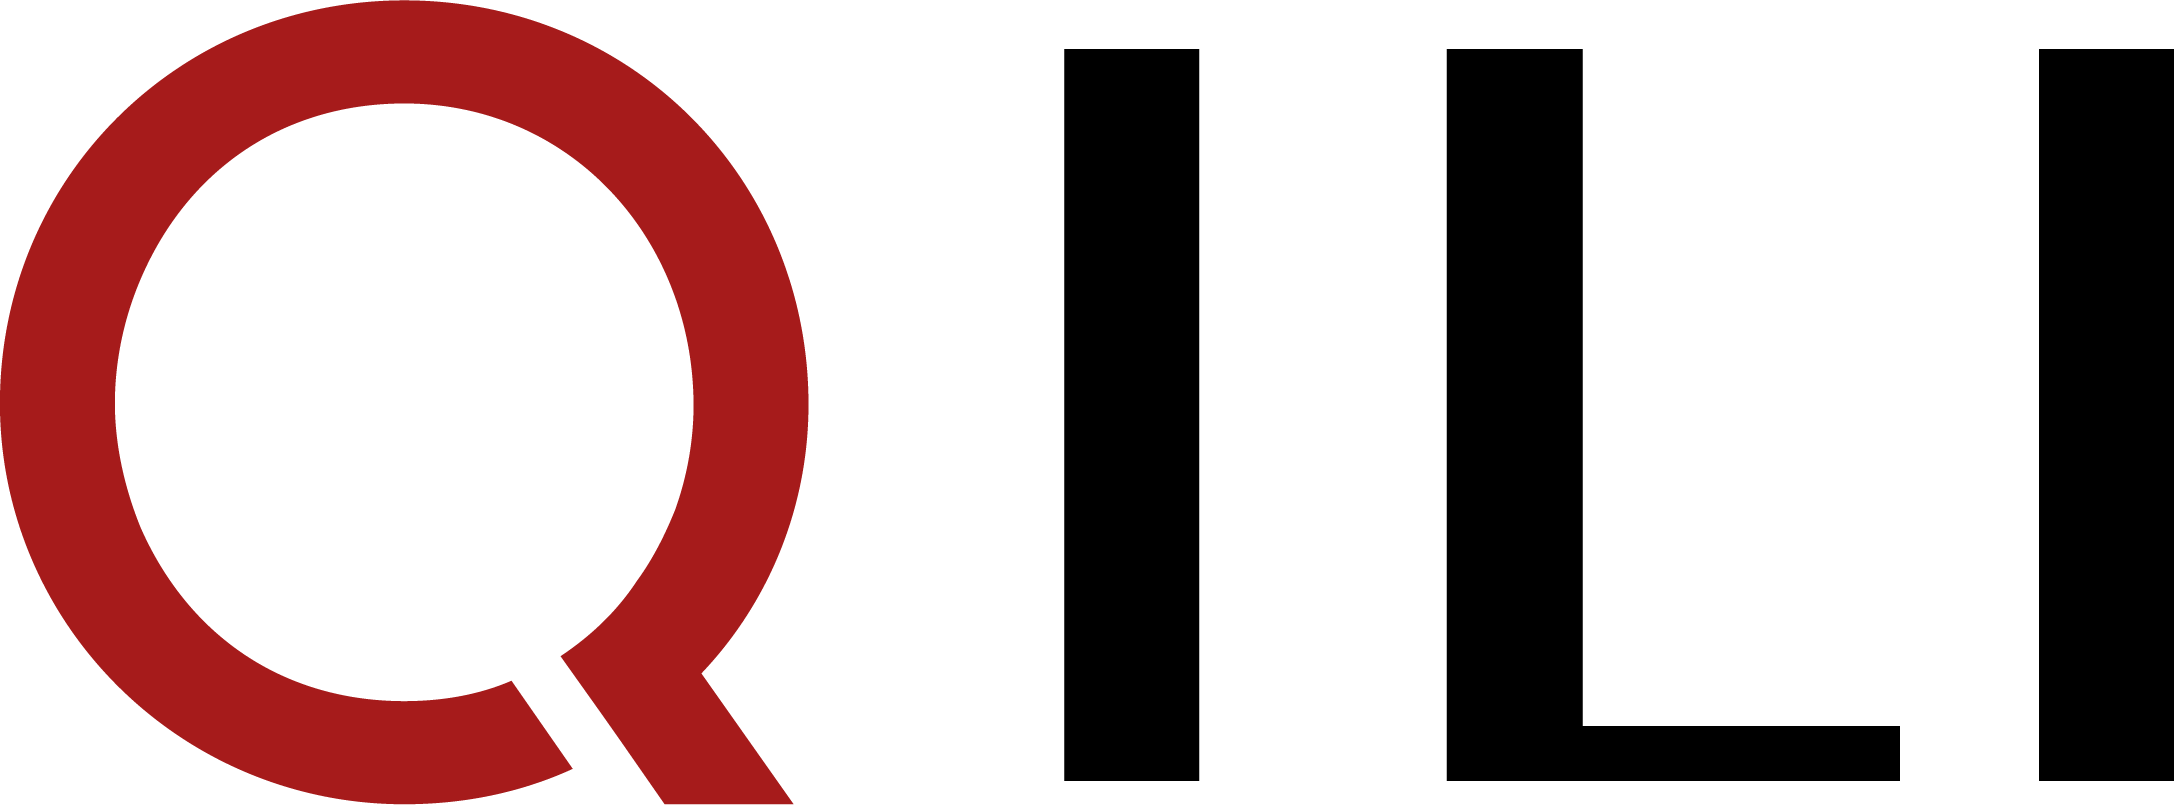 Qili-logo